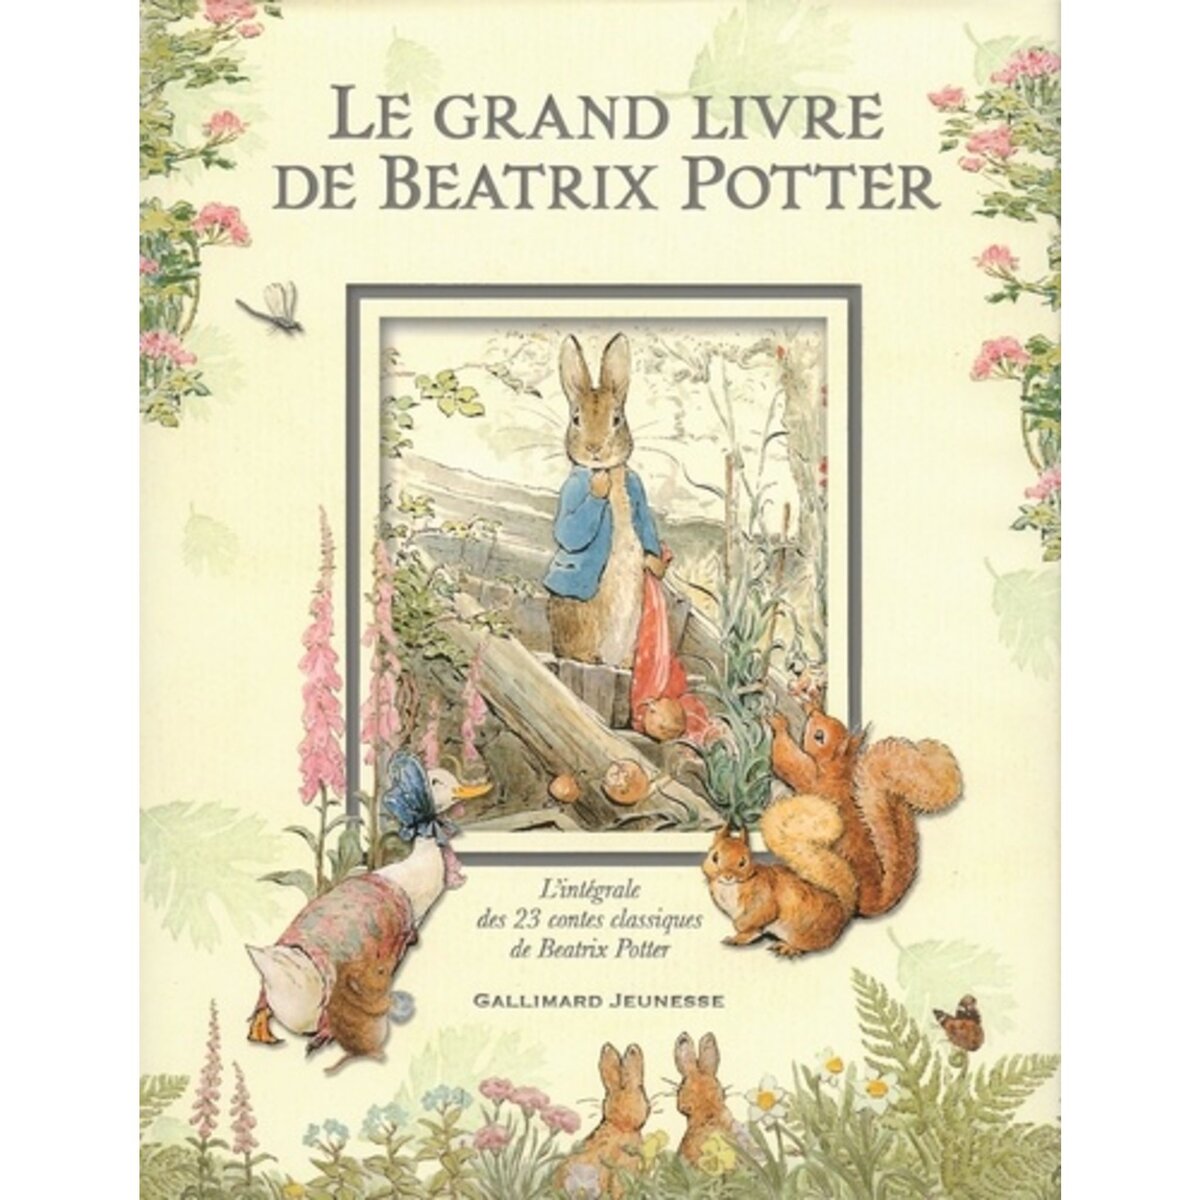  LE GRAND LIVRE DE BEATRIX POTTER. L'INTEGRALE DES 23 CONTES CLASSIQUES DE L'AUTEUR, Potter Beatrix